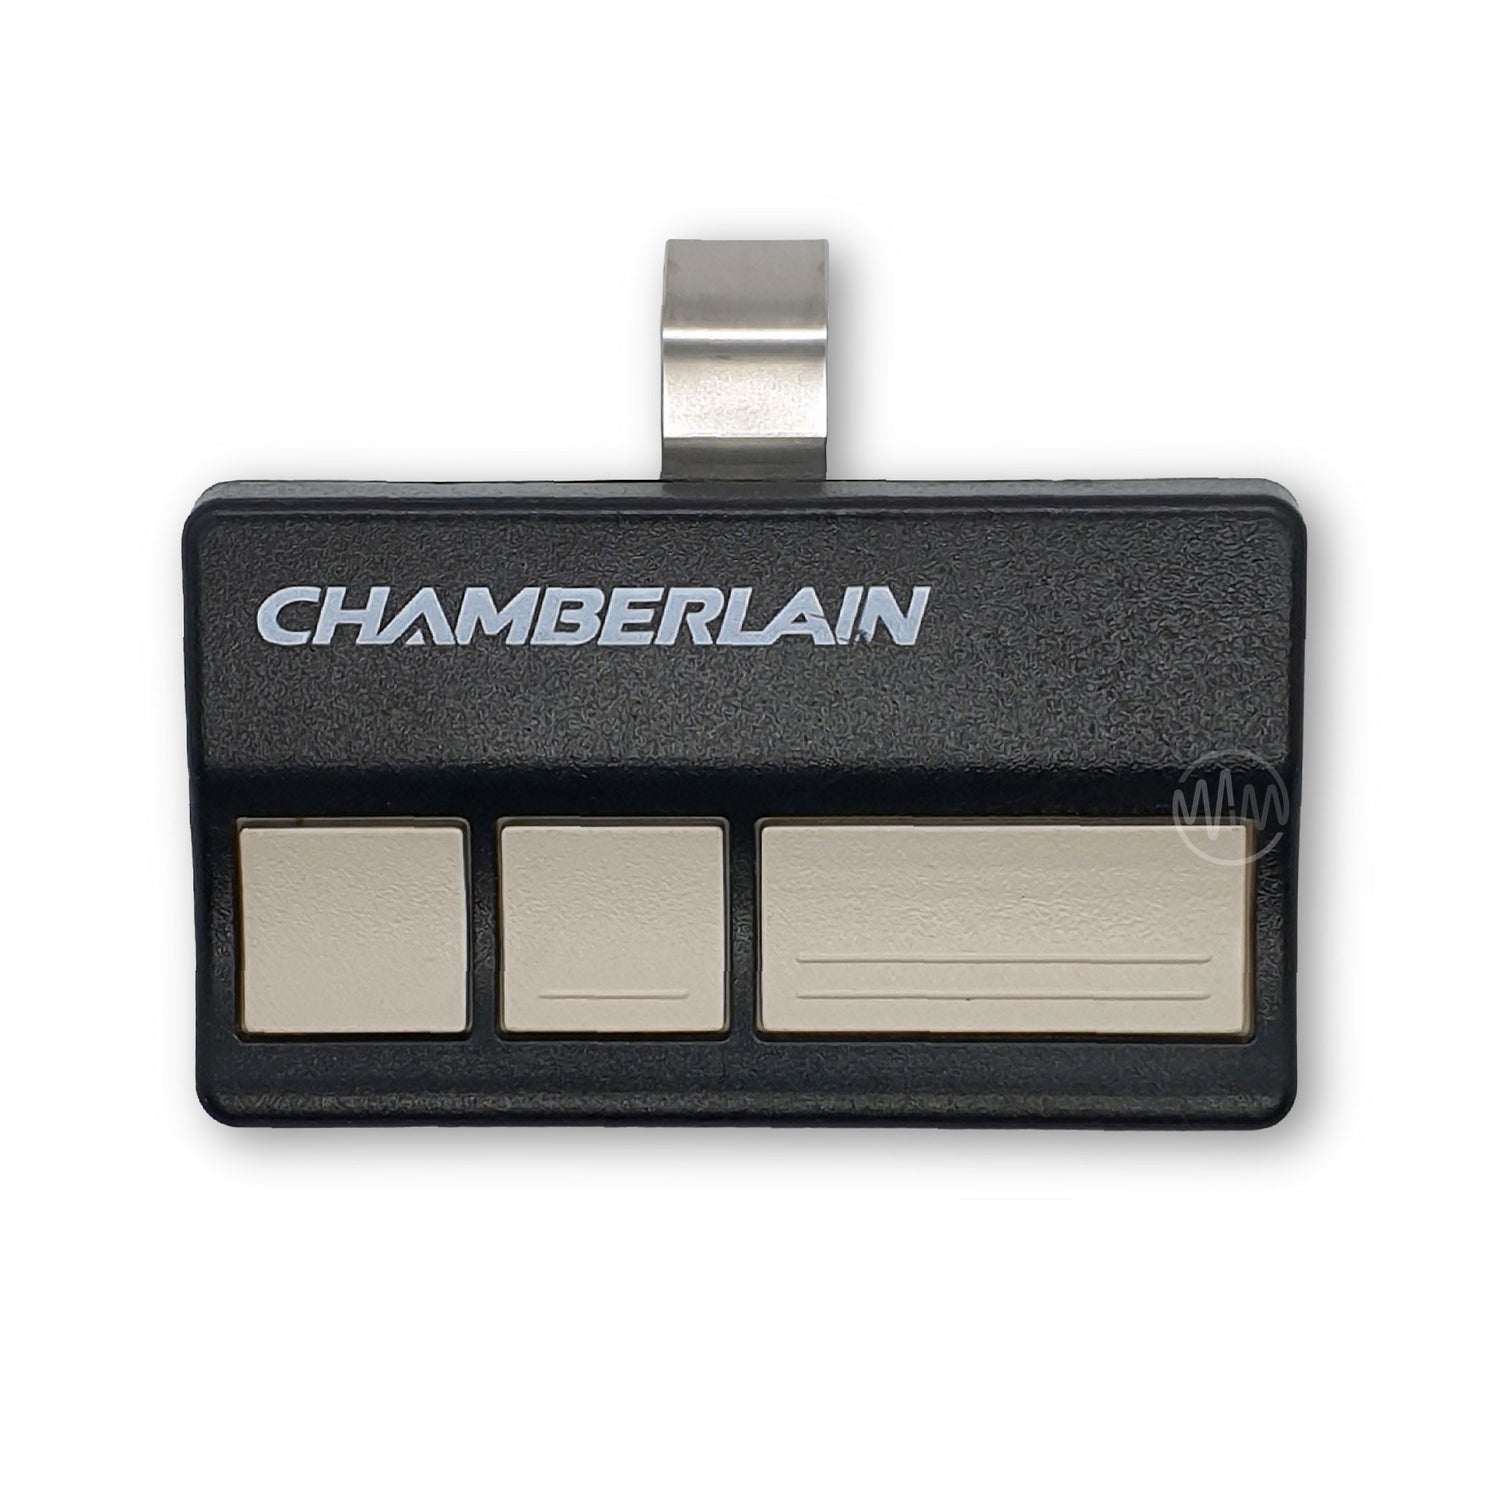 Chamberlain Garage Door Remotes